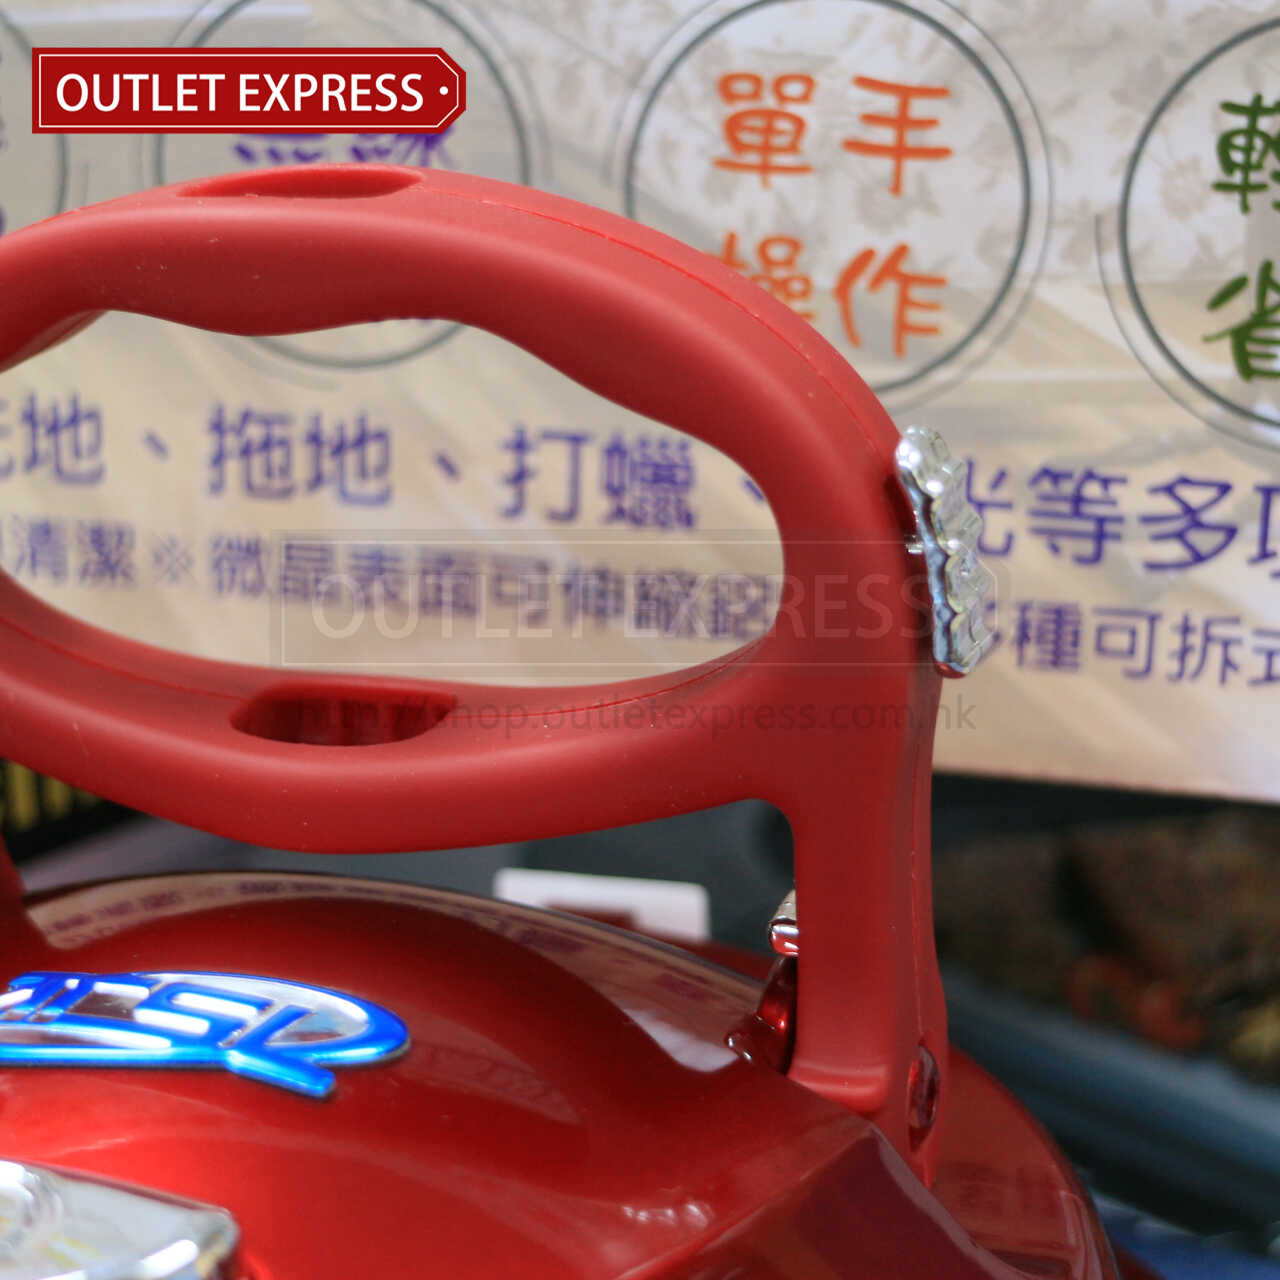 巧霸王 TSL-112第三代多功能無線電動清潔機 - Outlet Express HK生活百貨城實拍相片